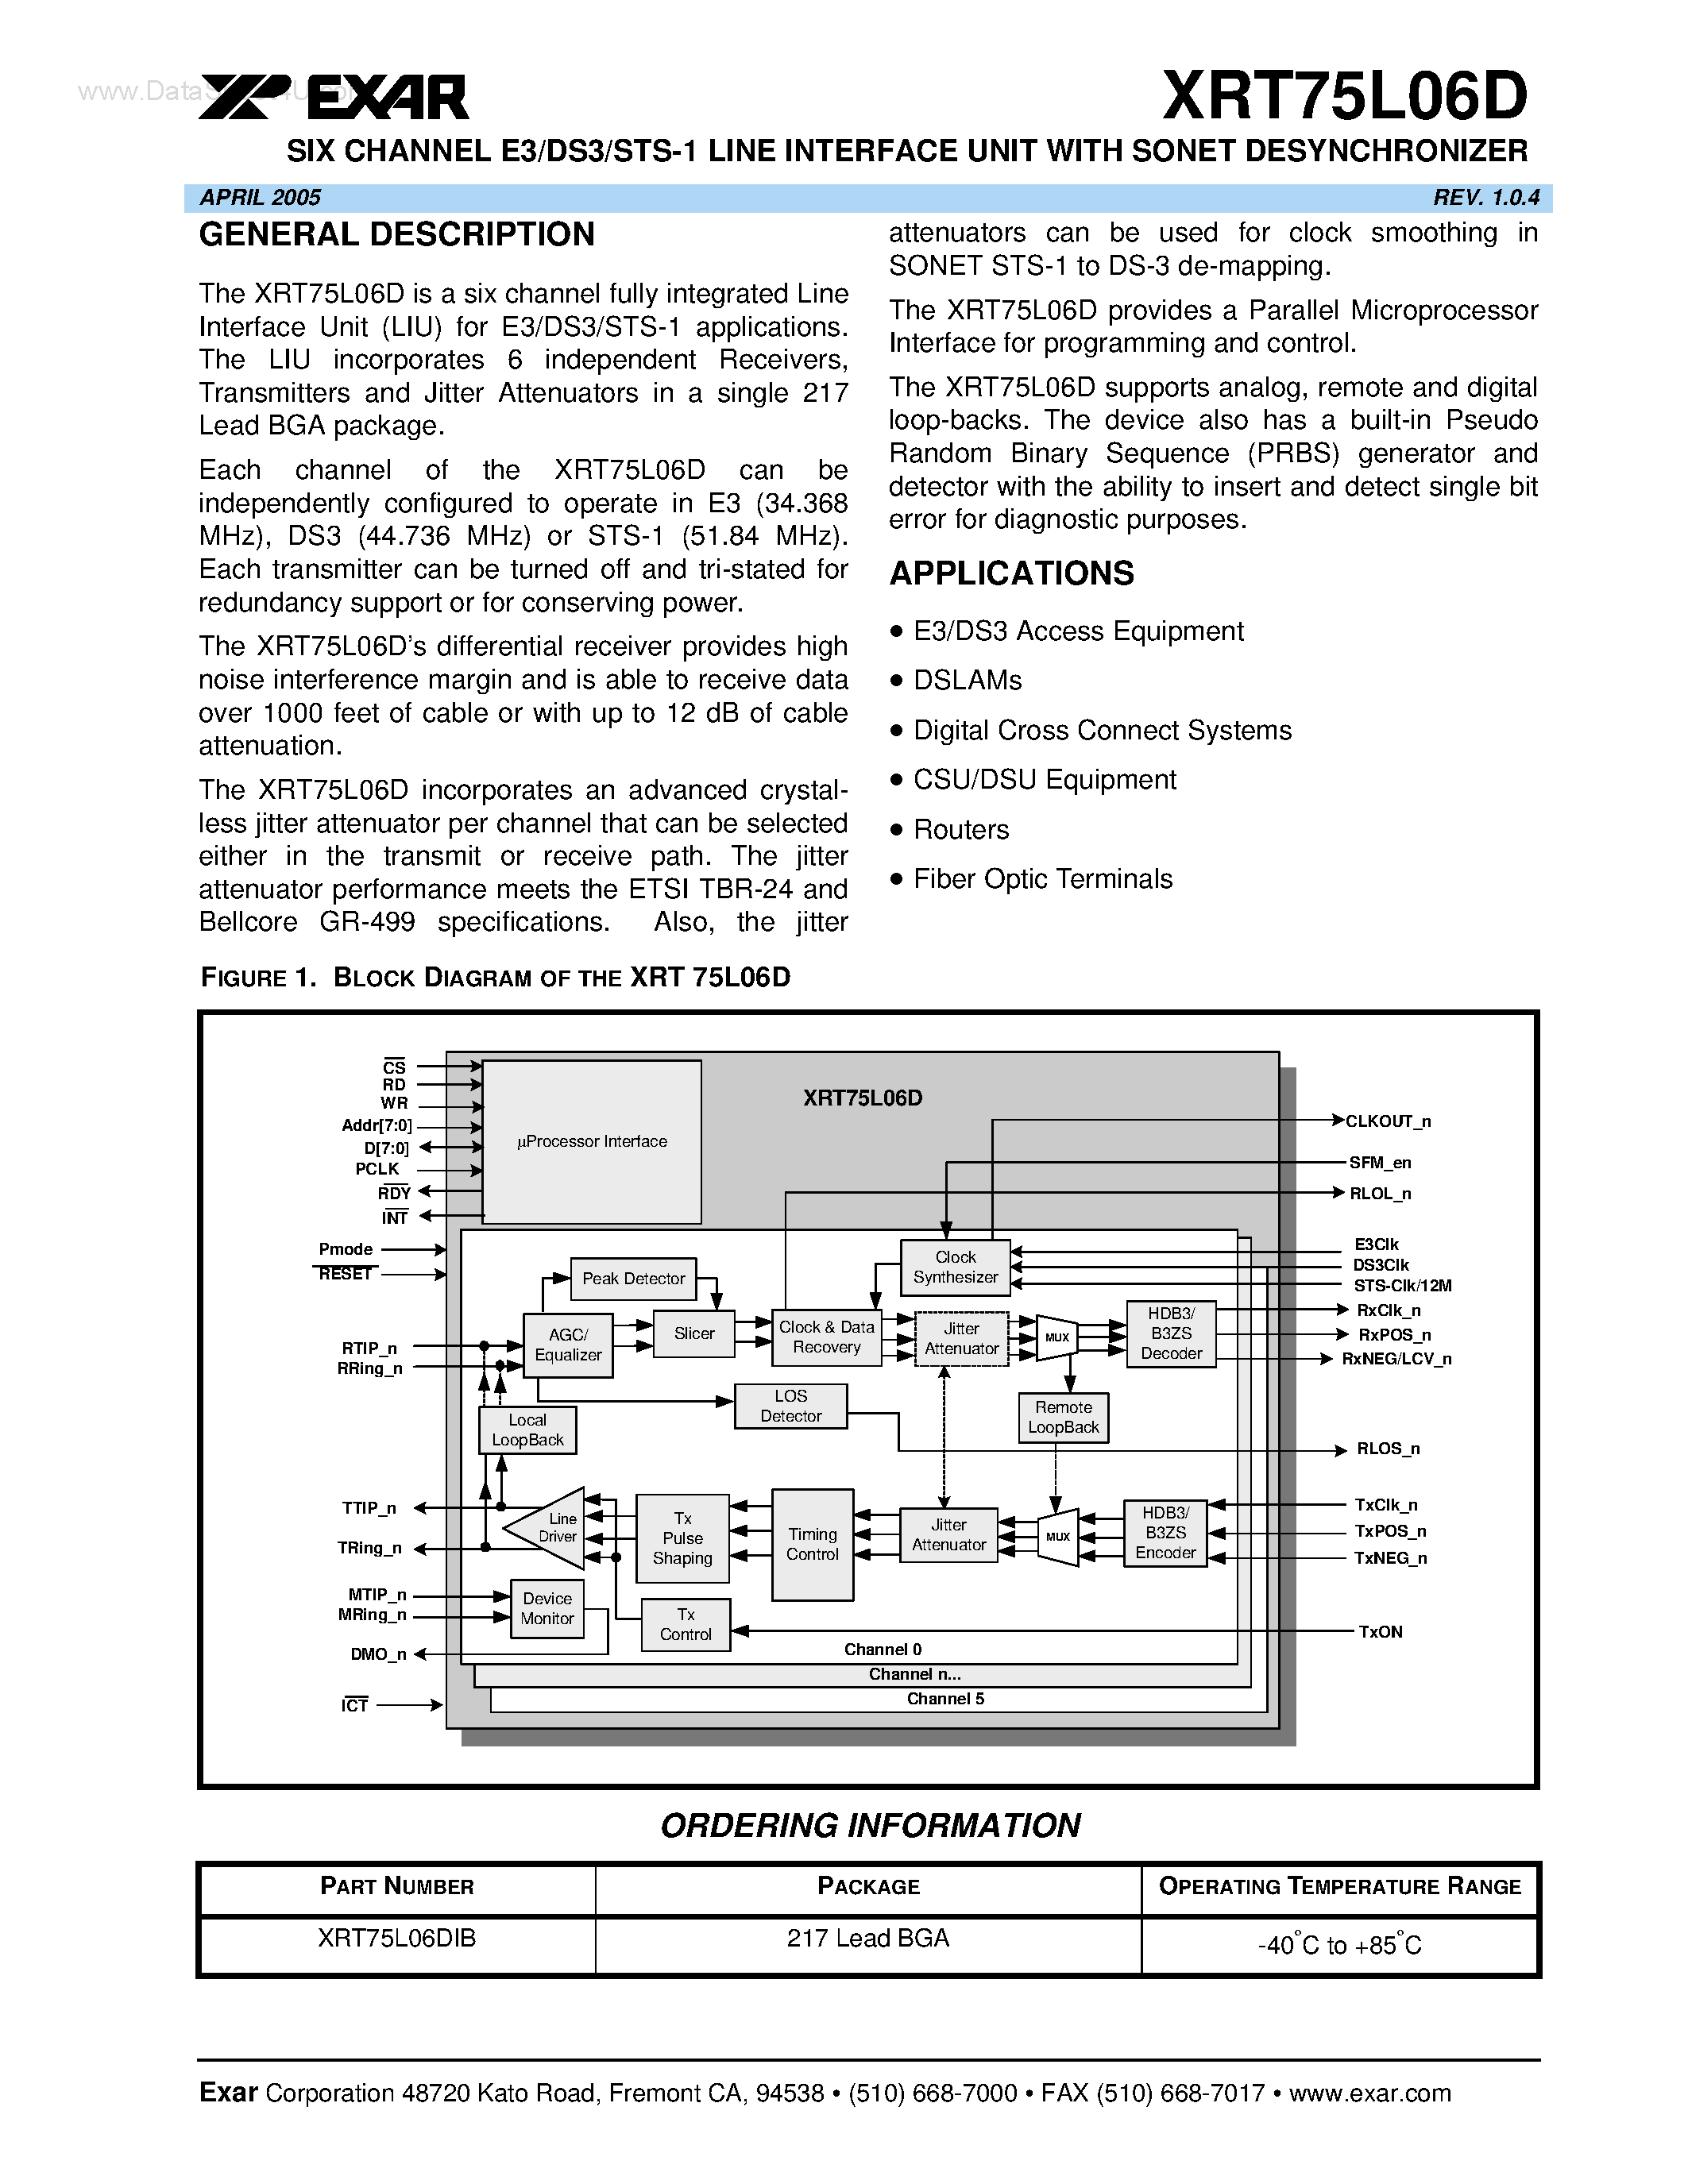 Даташит XRT75L06D - SIX CHANNEL E3/DS3/STS-1 LINE INTERFACE UNIT страница 1